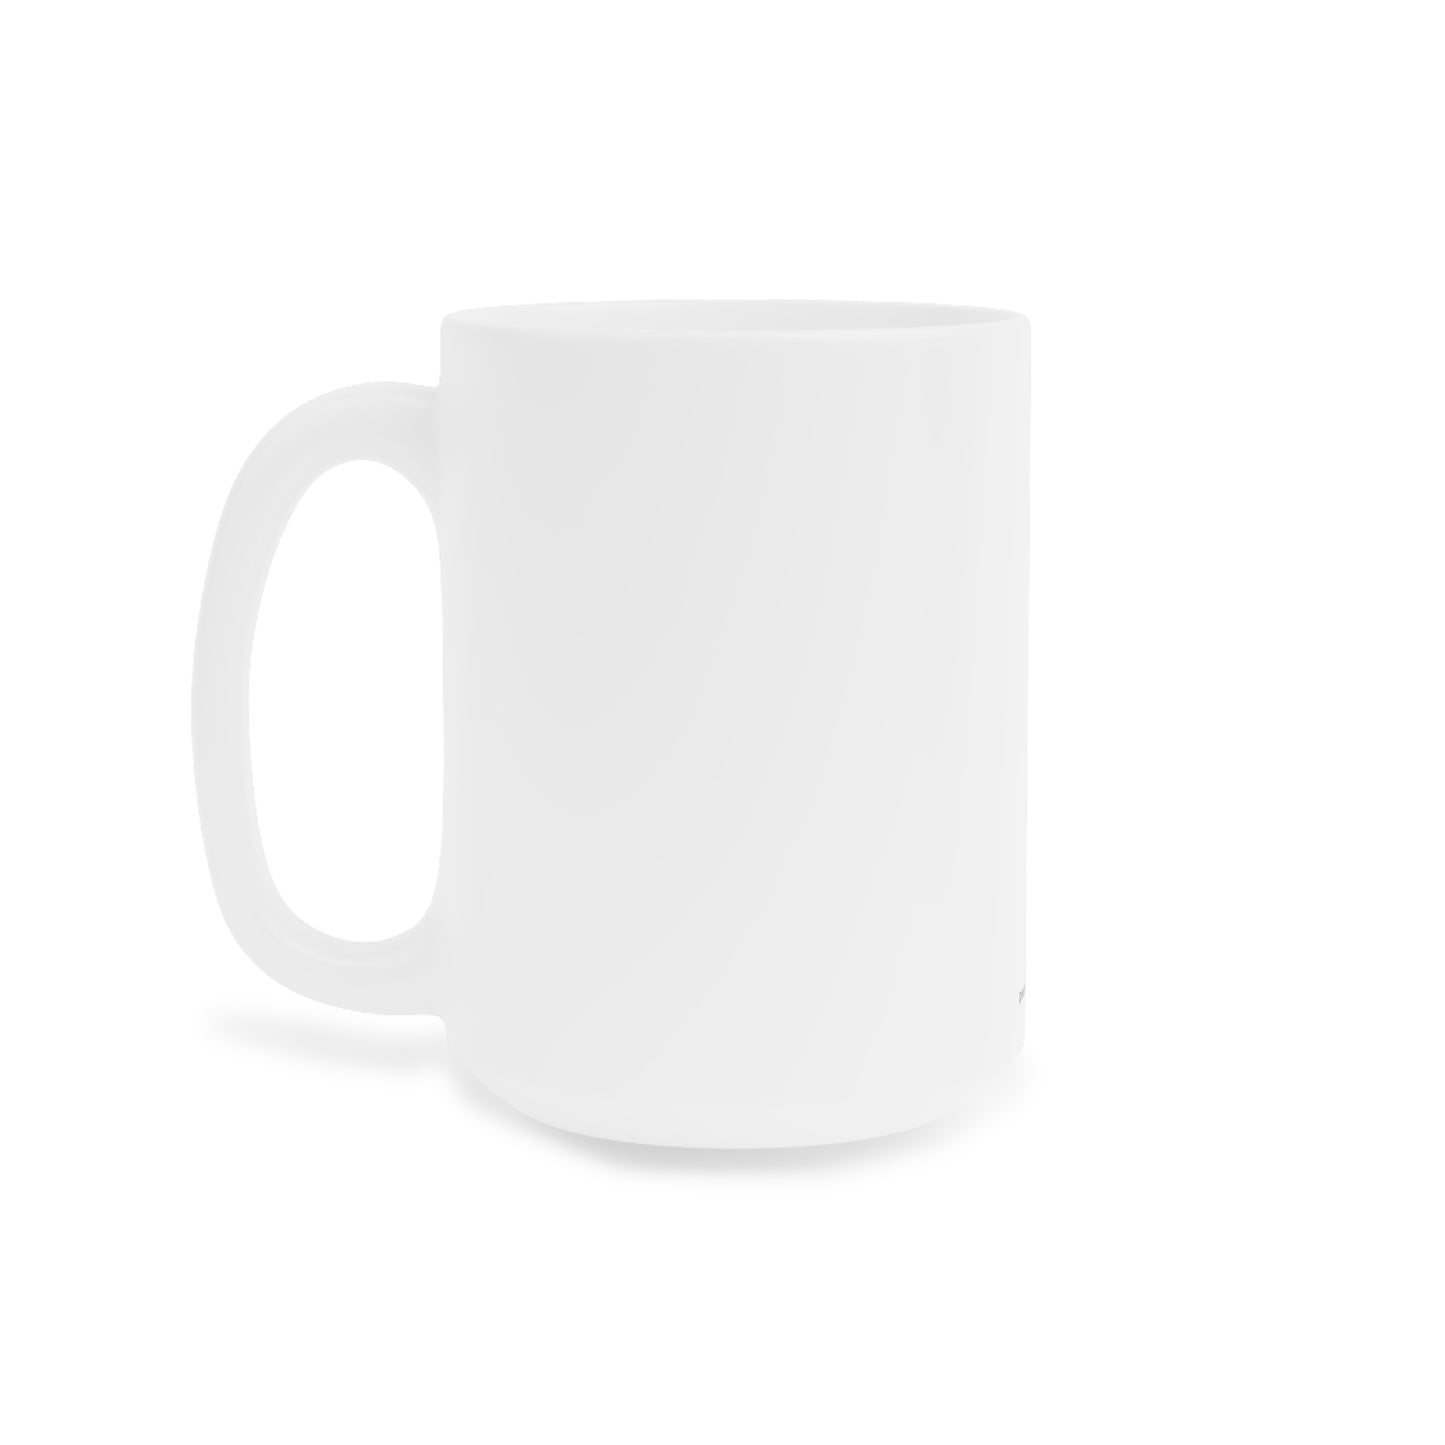 Coffee Mug 15oz - (010) Neon Ne